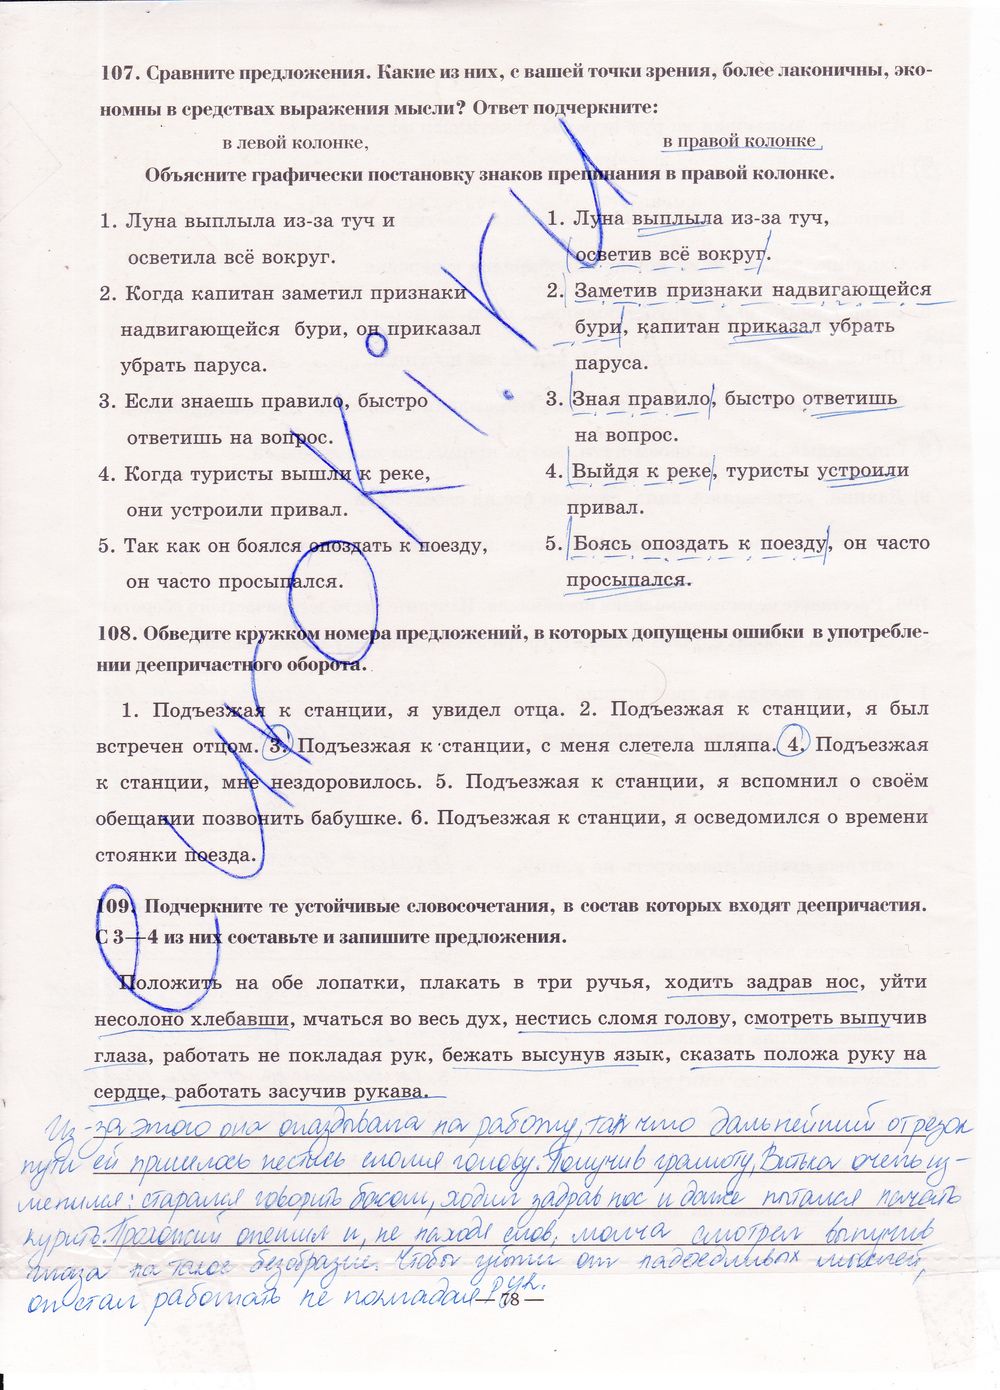 ГДЗ Русский язык 7 класс - стр. 78